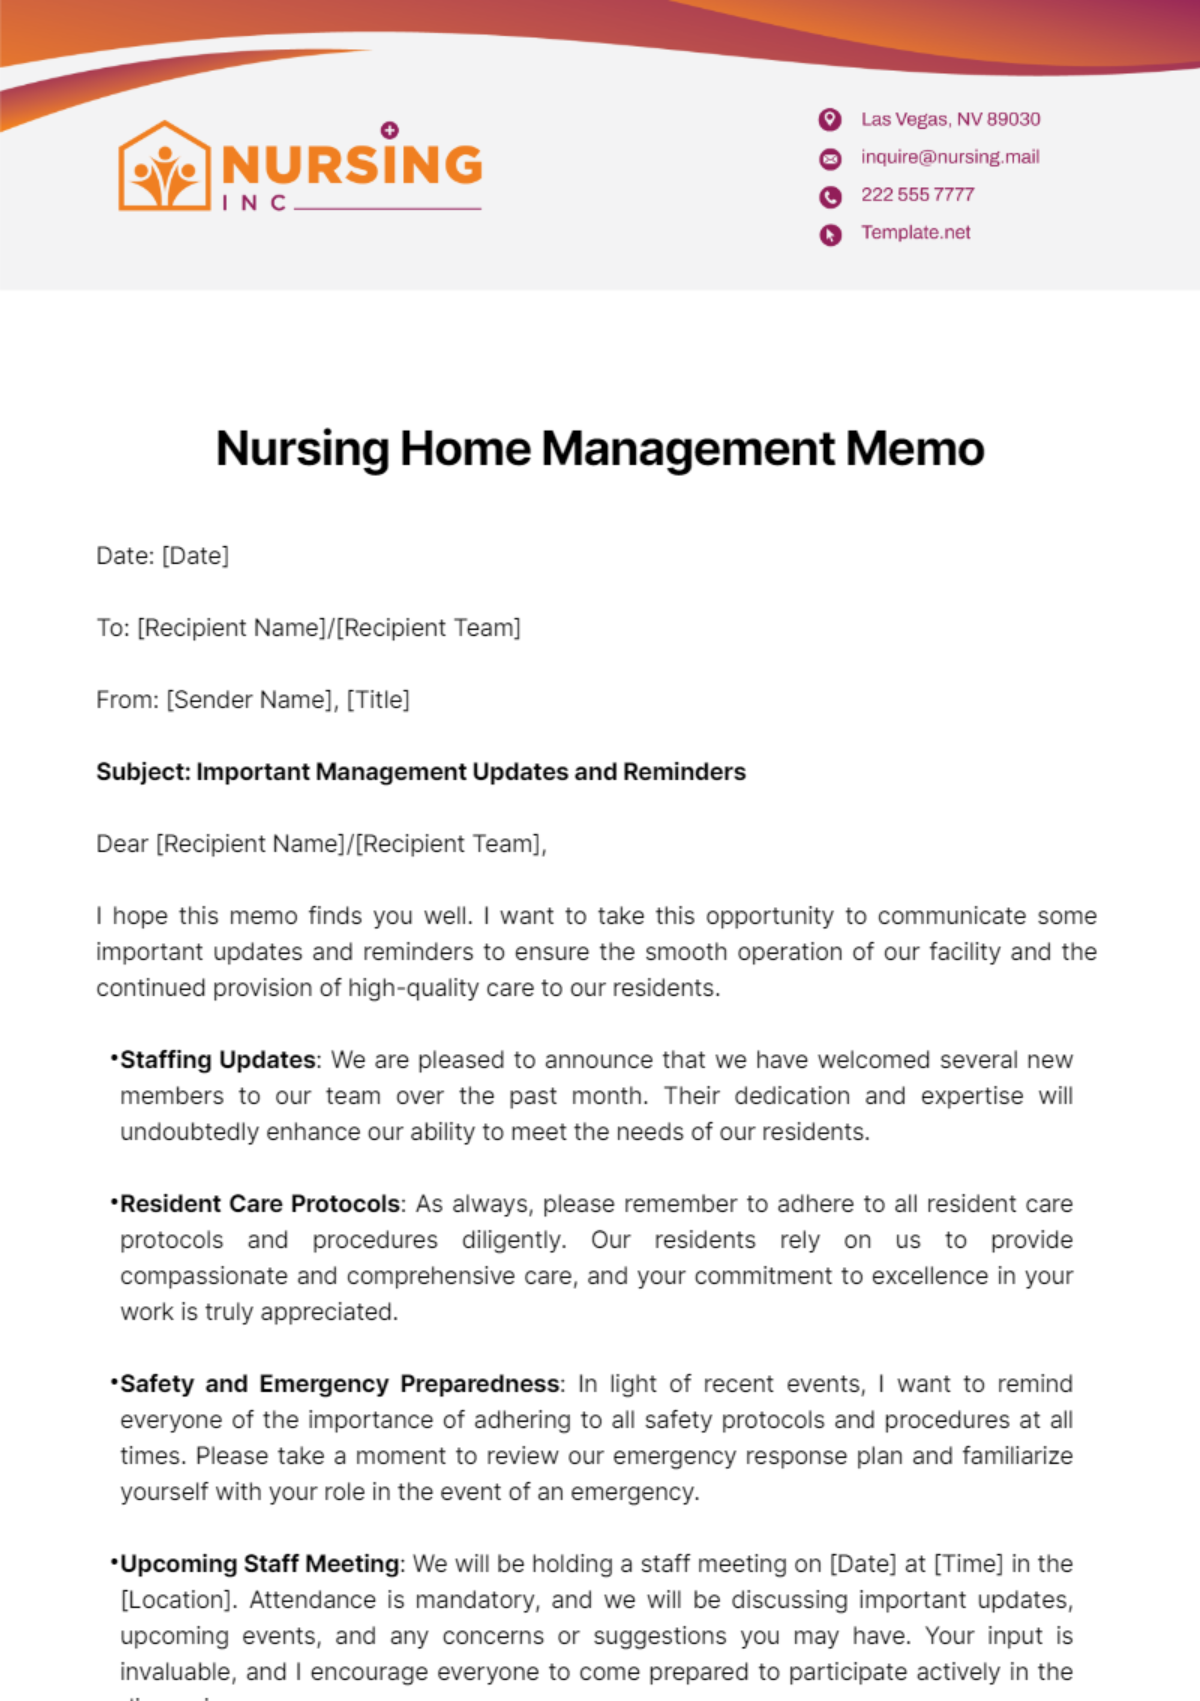 Nursing Home Management Memo Template